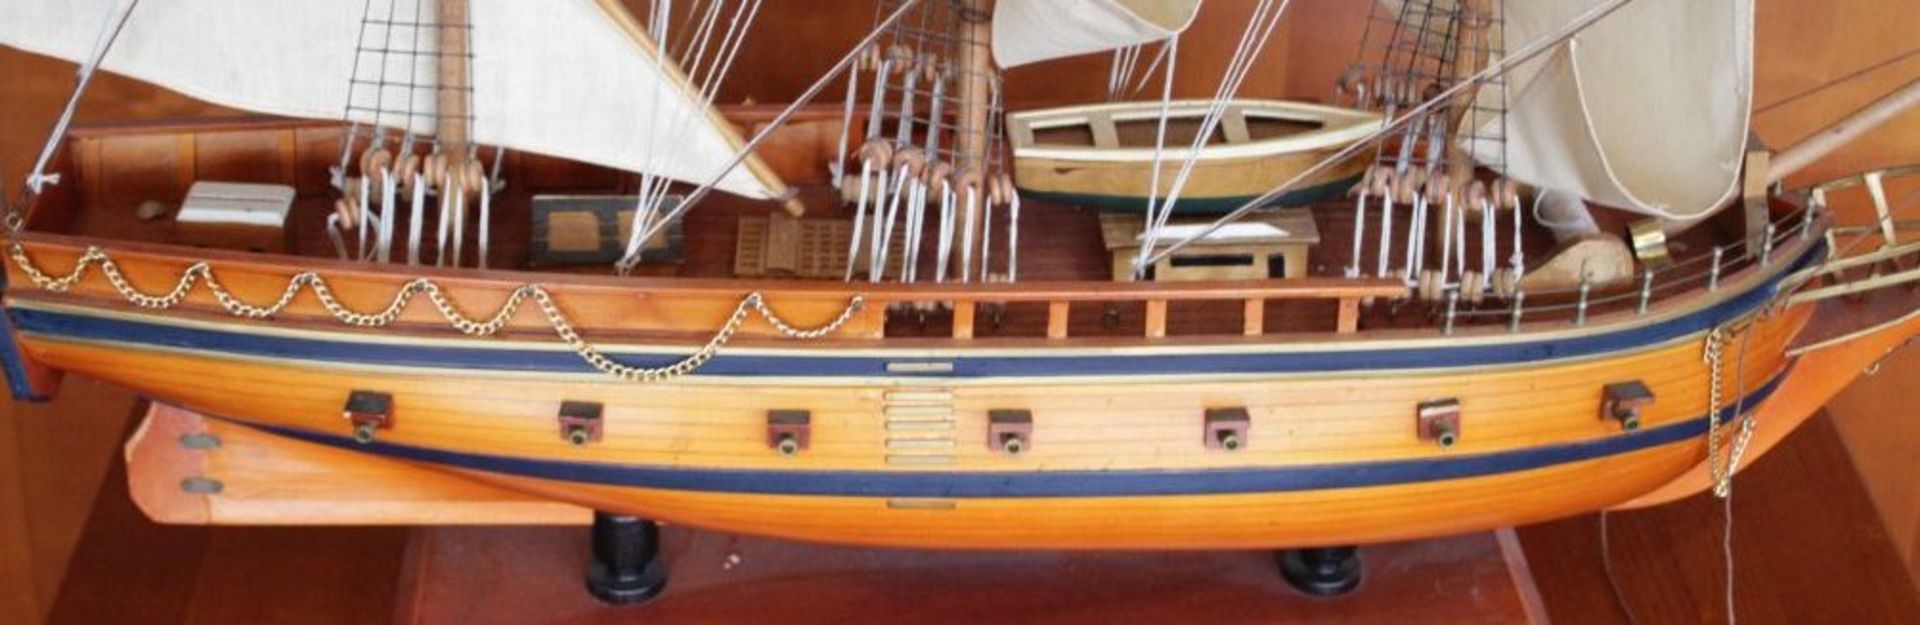 Schiffsmodell "Prince 1670" auf Stand, Holz, H-95cm L-110cm B-20vm. KEIN VERSAND MÖGLICH - Image 6 of 6